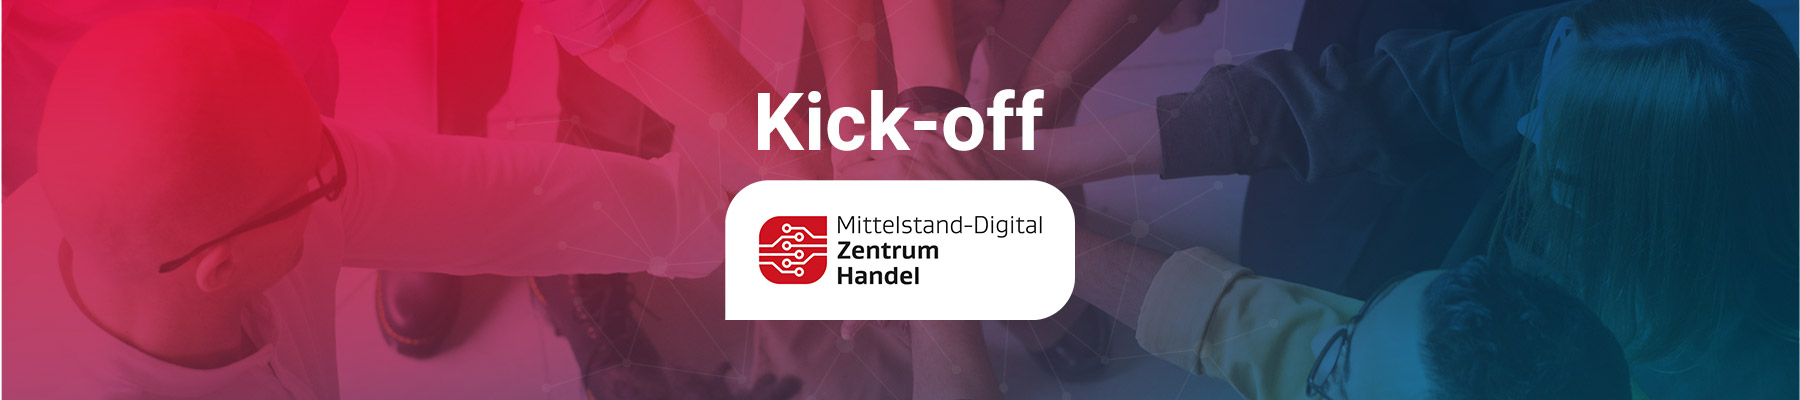 Kick-off Mittelstand-Digital Zentrum Handel